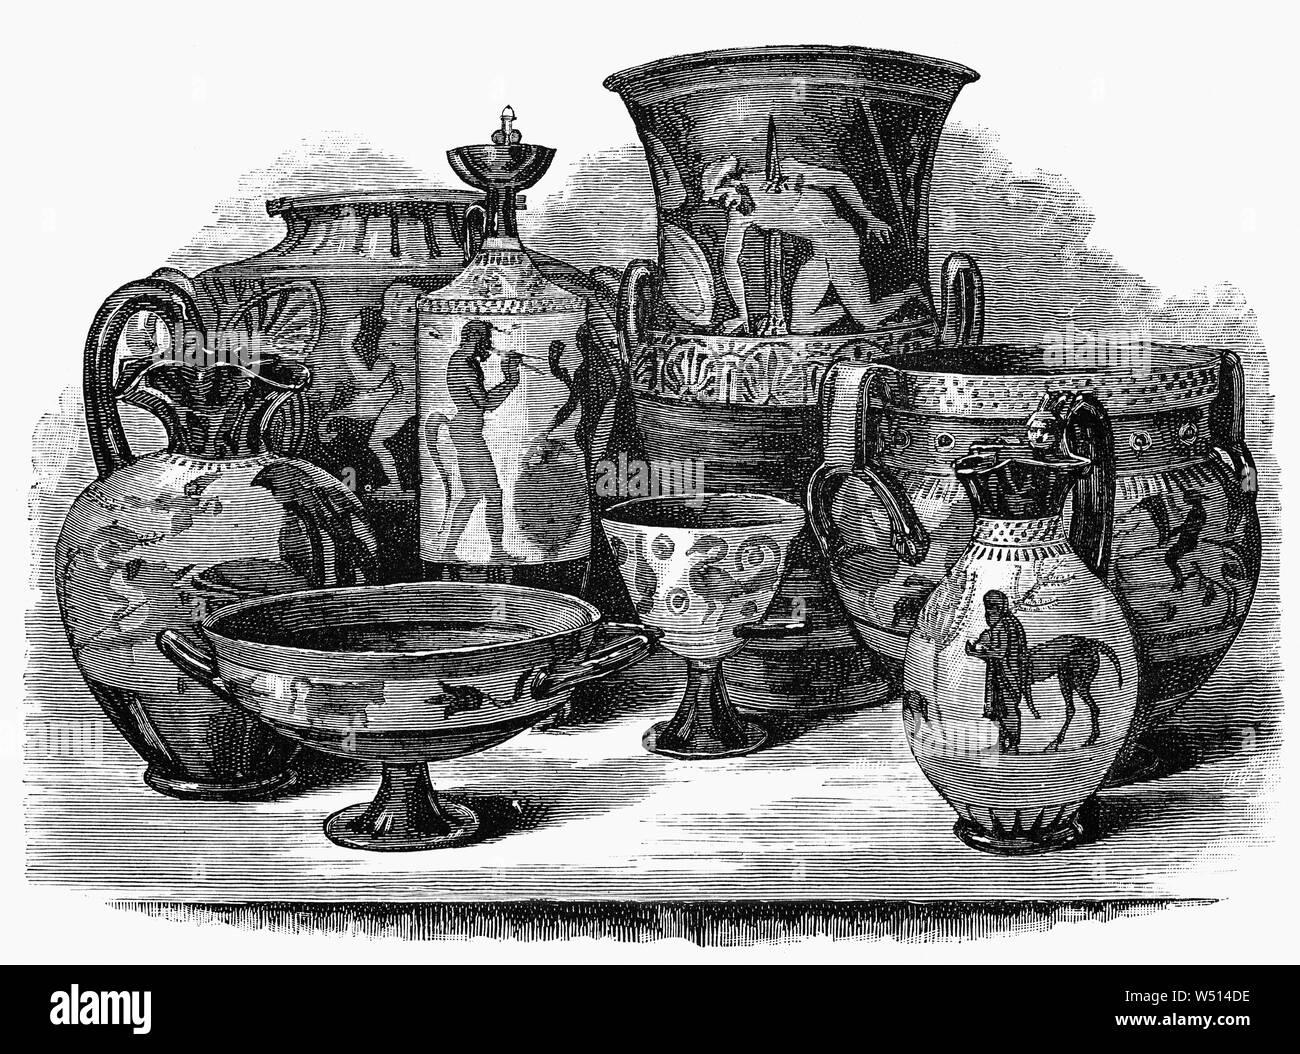 Vases produites par la civilisation étrusque en Italie centrale entre le 9e et 2e siècles avant notre ère ont été fortement influencés par la peinture Vase grec, en utilisant les mêmes techniques, et en grande partie les mêmes formes. Le vase à figures noires et rouges plus tard la peinture-peinture vase figure techniques ont été utilisées. Les sujets étaient également très souvent tirée de la mythologie grecque à des périodes ultérieures. Il a été suggéré que beaucoup ou la plupart des vases peints étaient spécifiquement achetés pour être utilisés dans les sépultures, comme substitut, moins cher et moins susceptibles d'attirer des voleurs, que les navires en argent et bronze. Banque D'Images